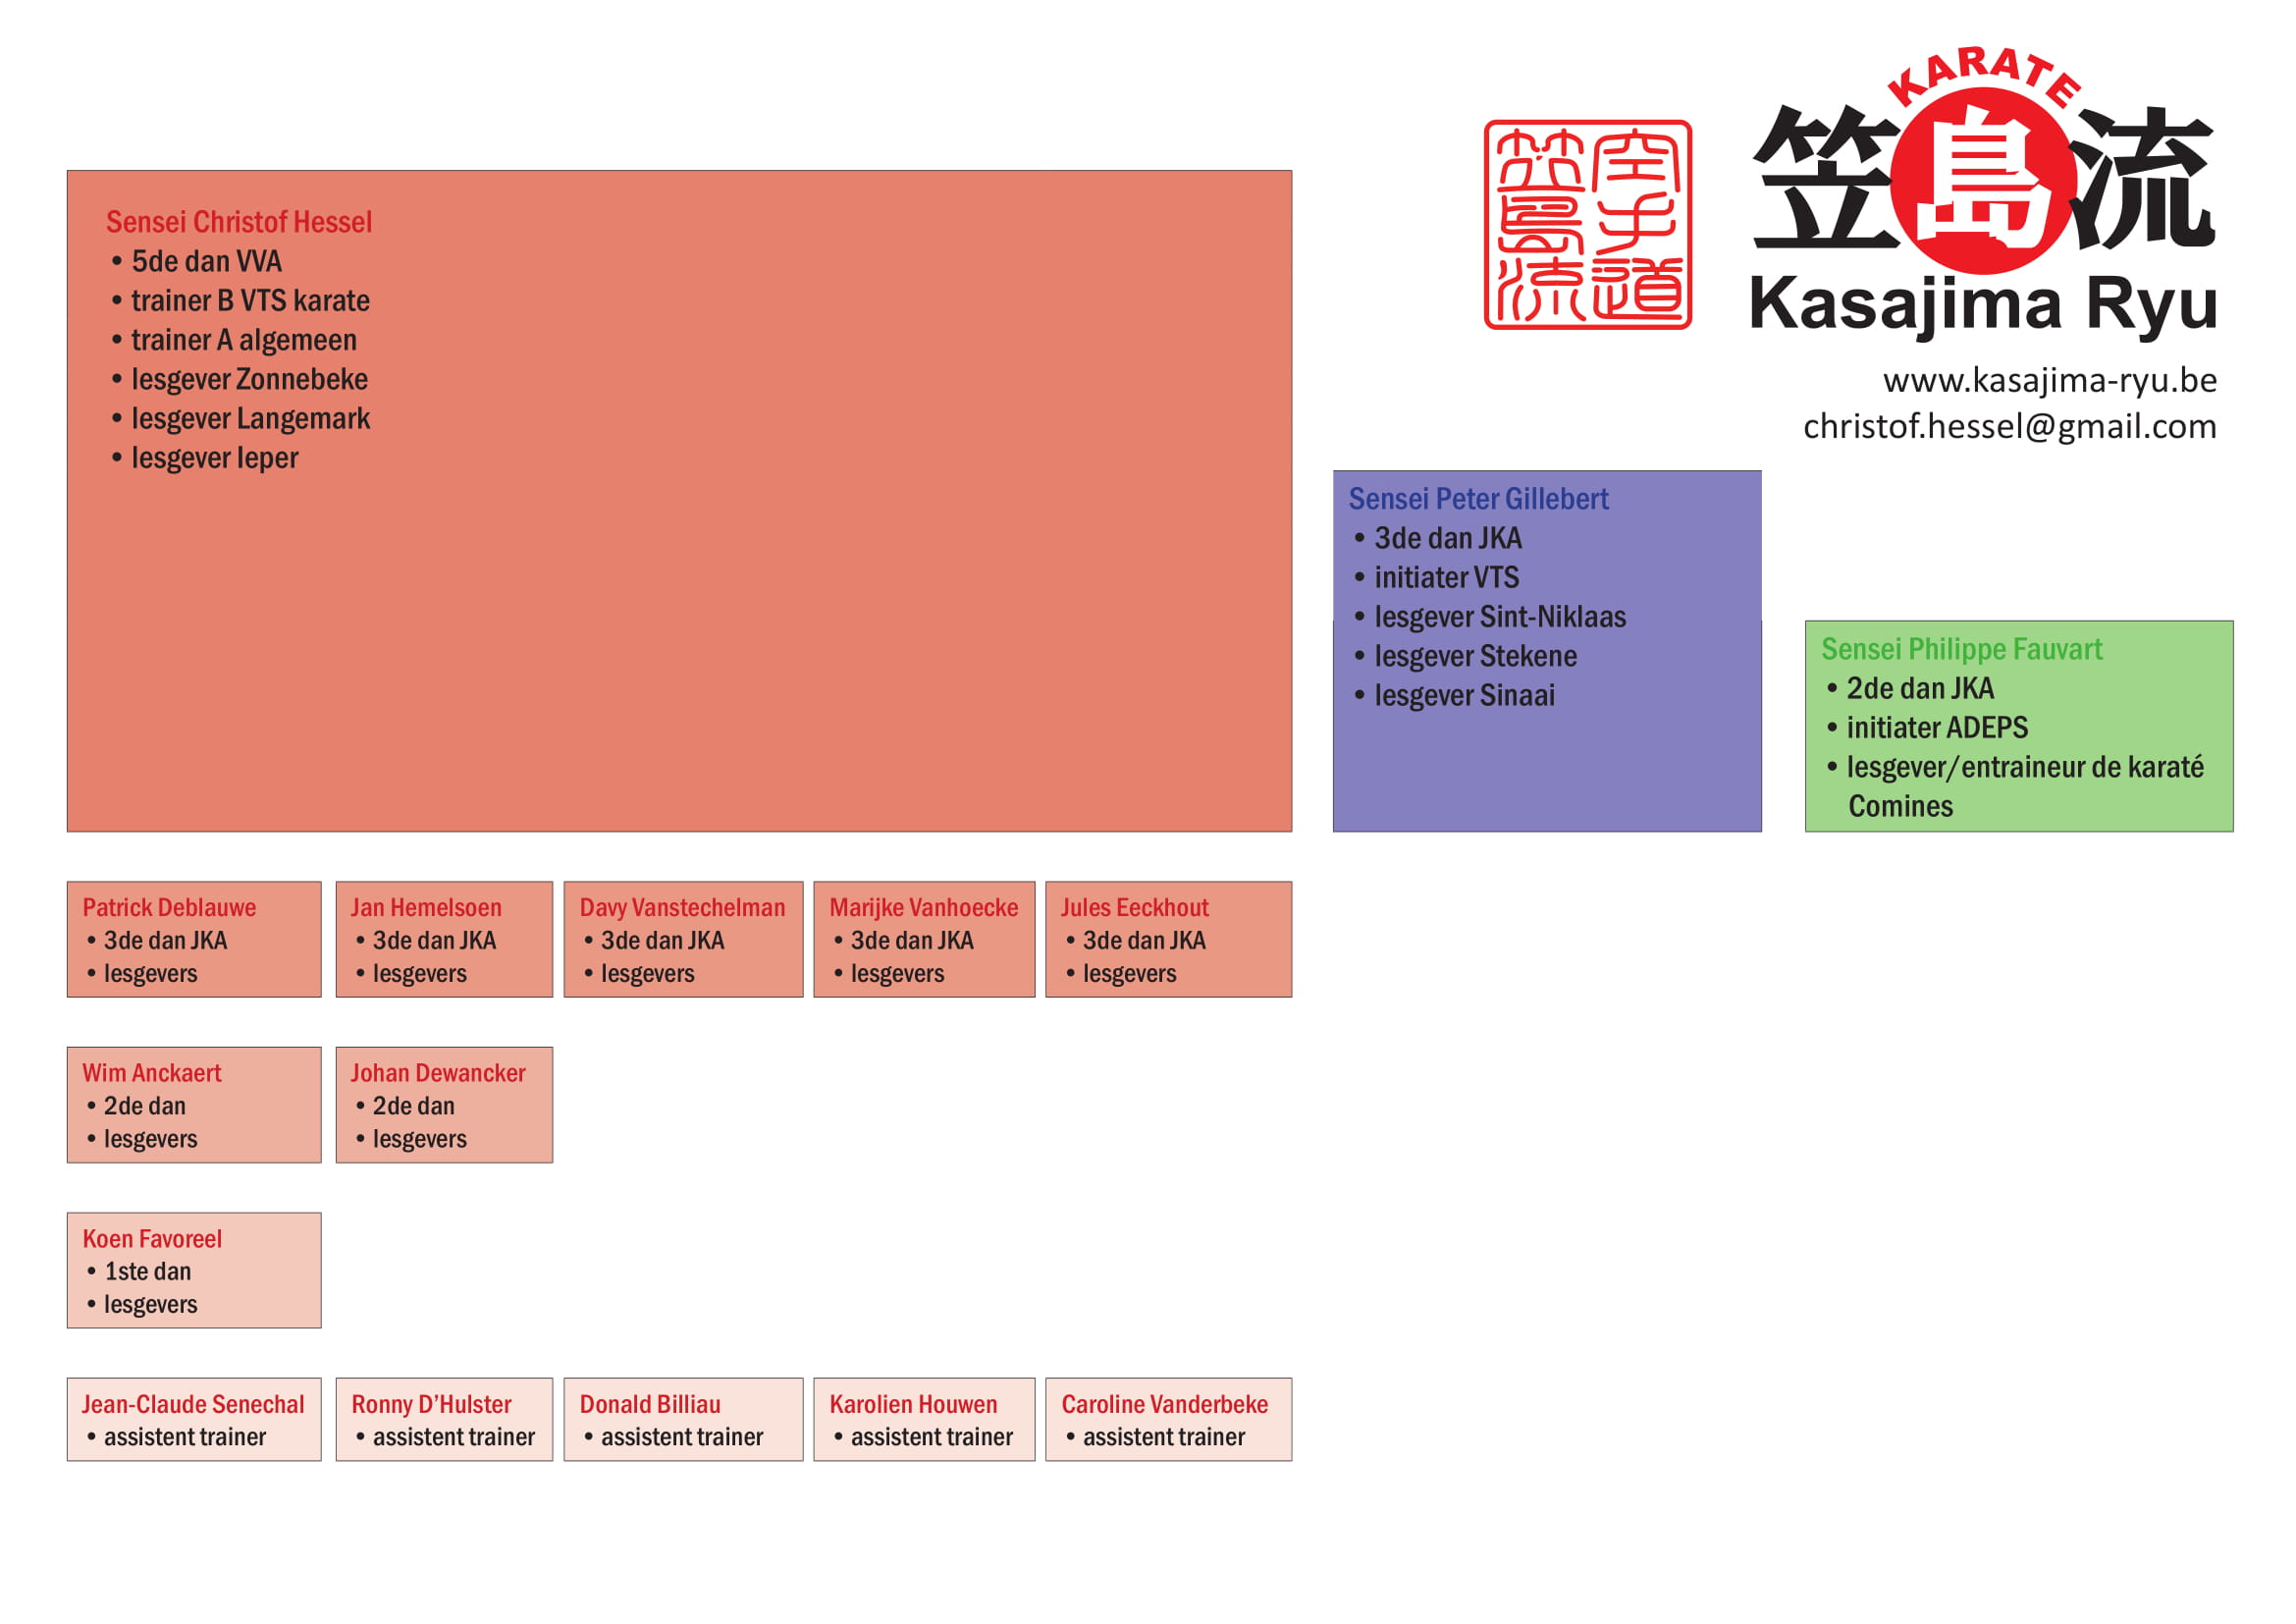 Kasajima Ryu organigram 2018 1